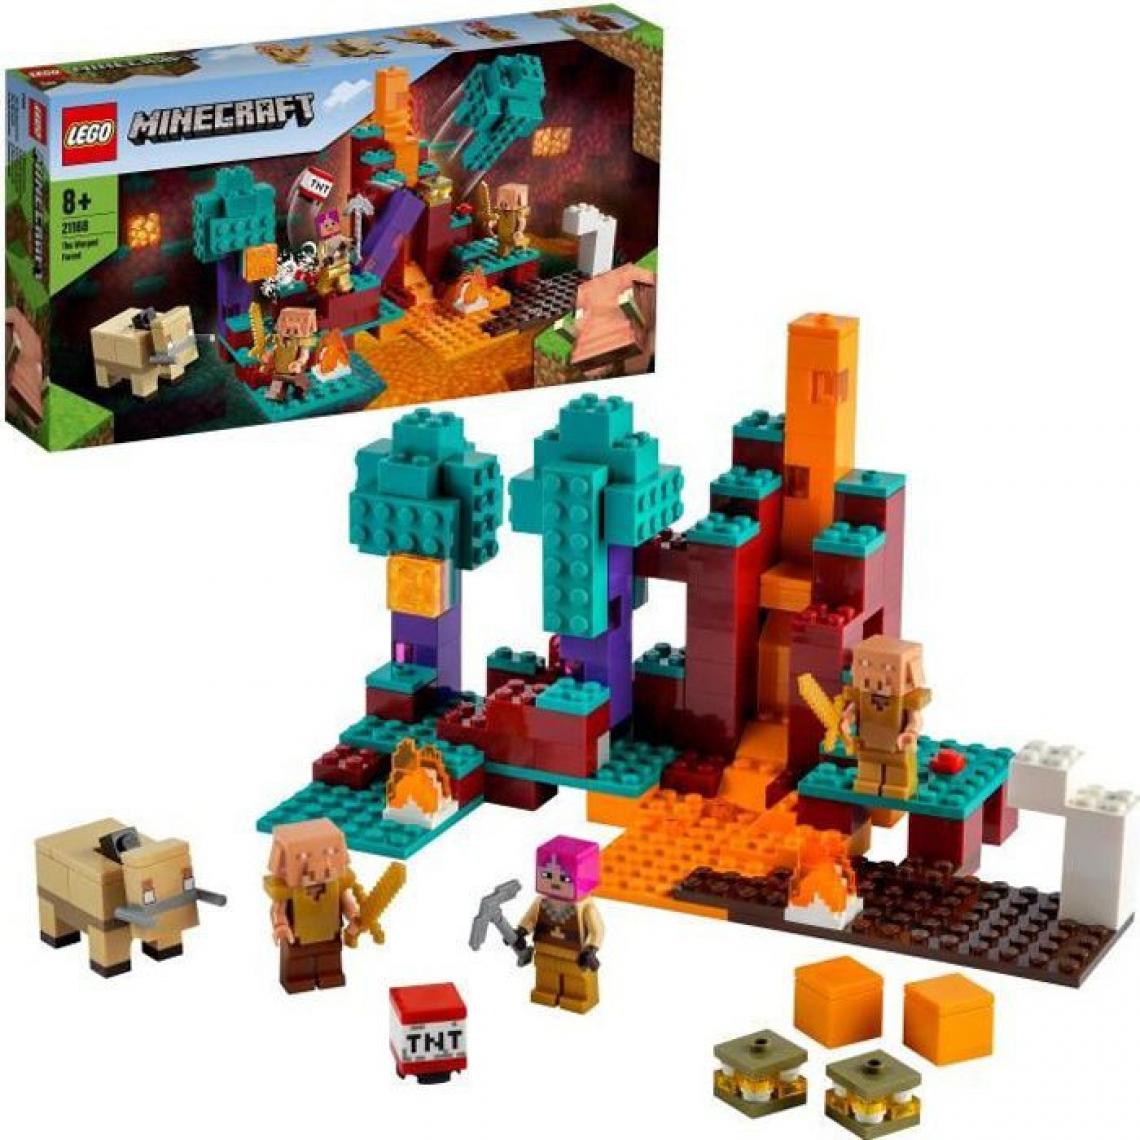 Lego - LEGO 21168 Minecraft™ La Foret Biscornue Jeu du Nether et de Construction, le Chasseur, Piglin et Hoglin pour Enfant de 8 Ans - Briques Lego